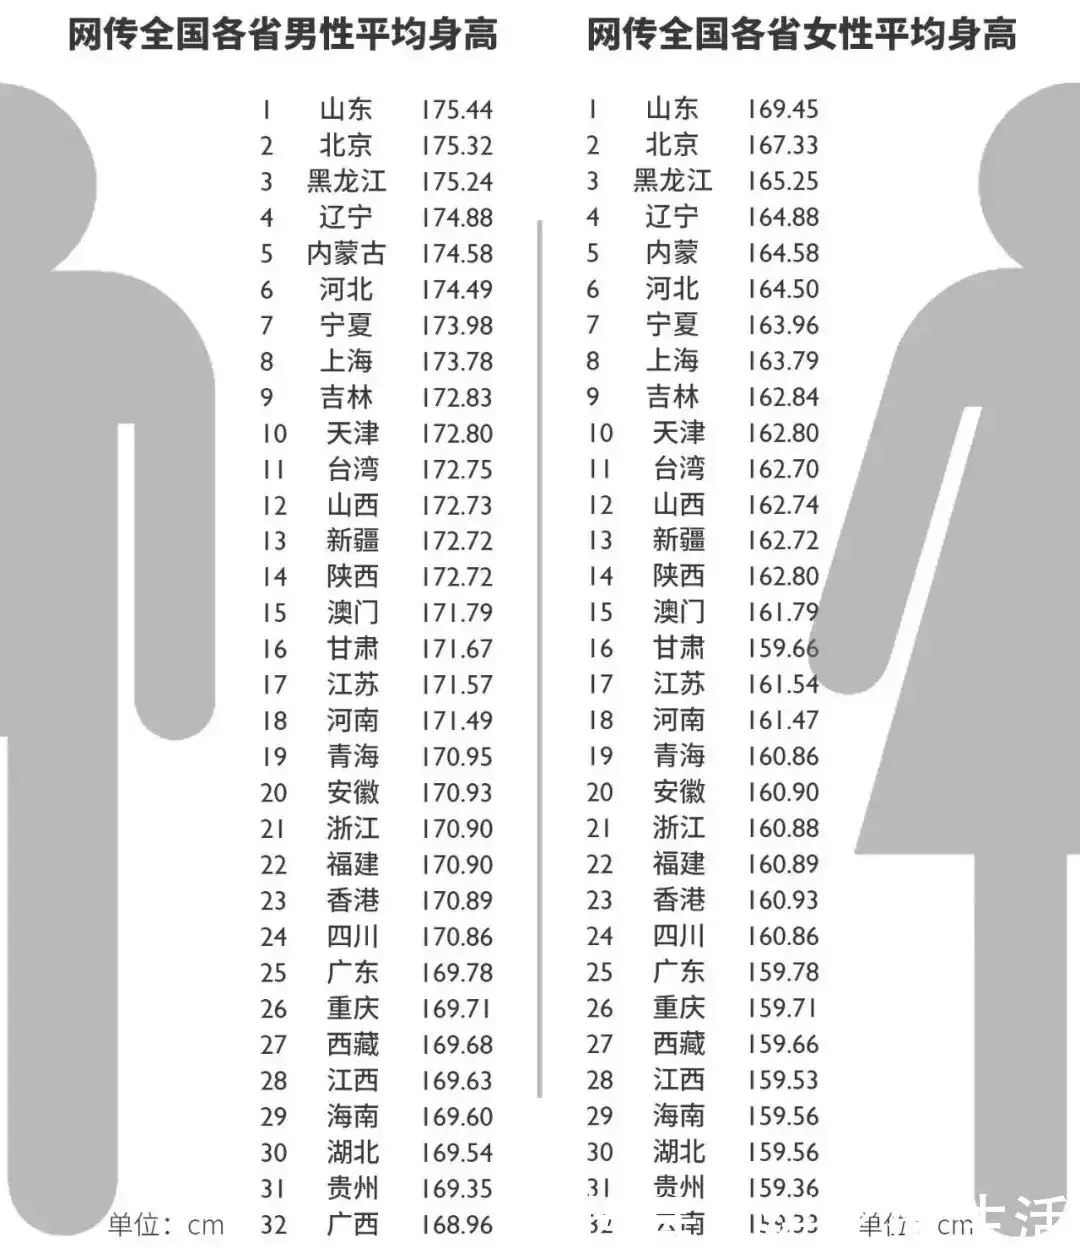 1、全国身高省份排名:年中国百强城市排行榜，哪些省份上榜的城市较多？